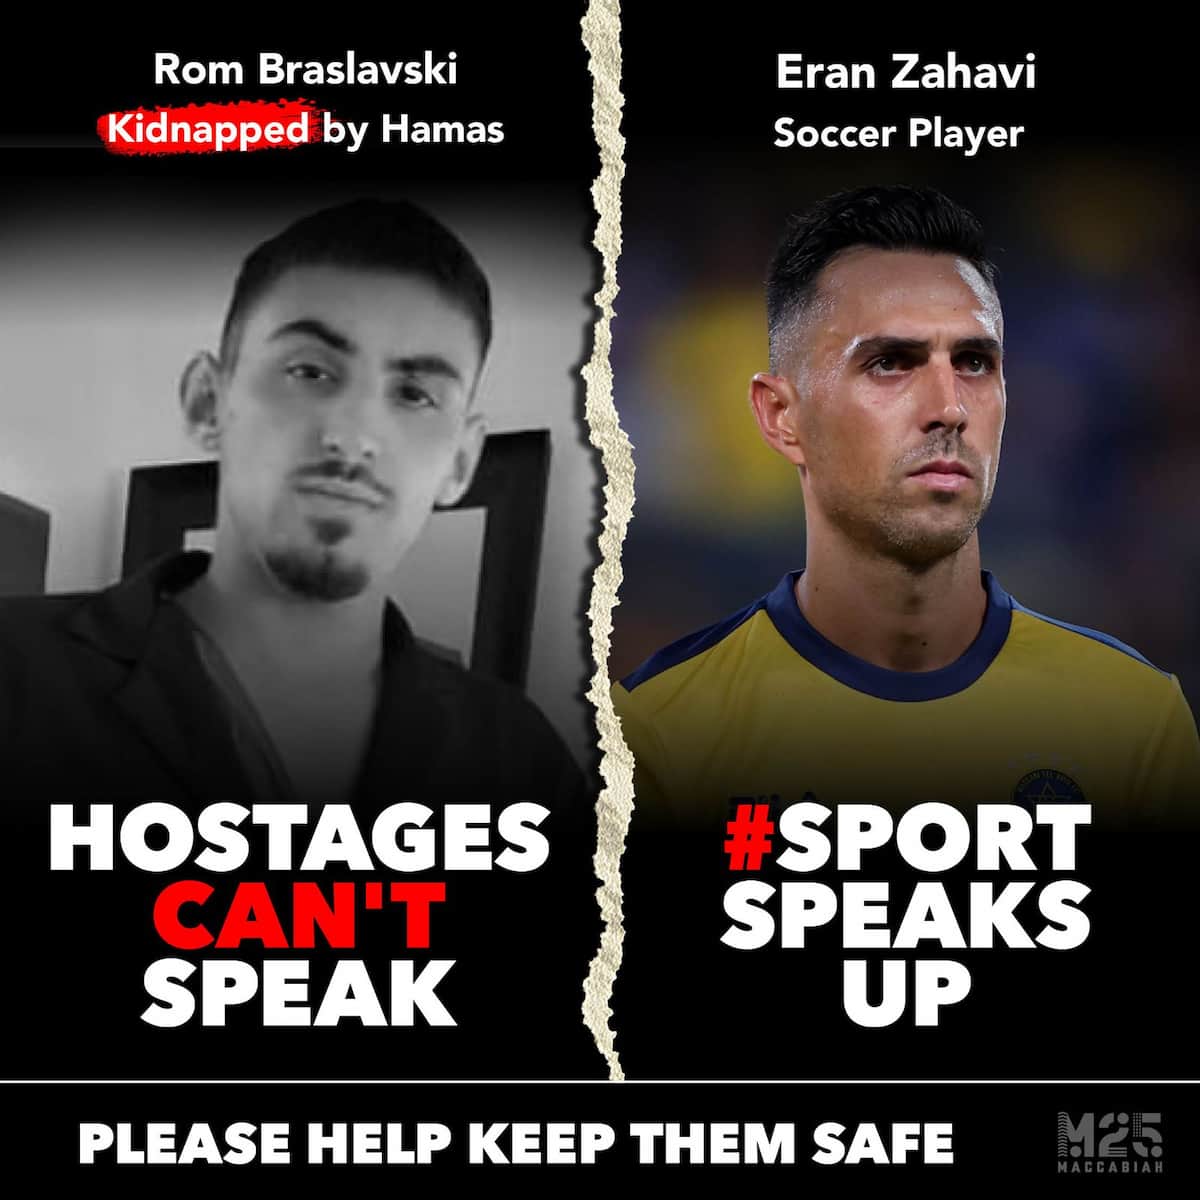 ערן זהבי בקמפיין שחרור חטופים למען הנער רום #SportSpeaksUp . מלחמה בישראל